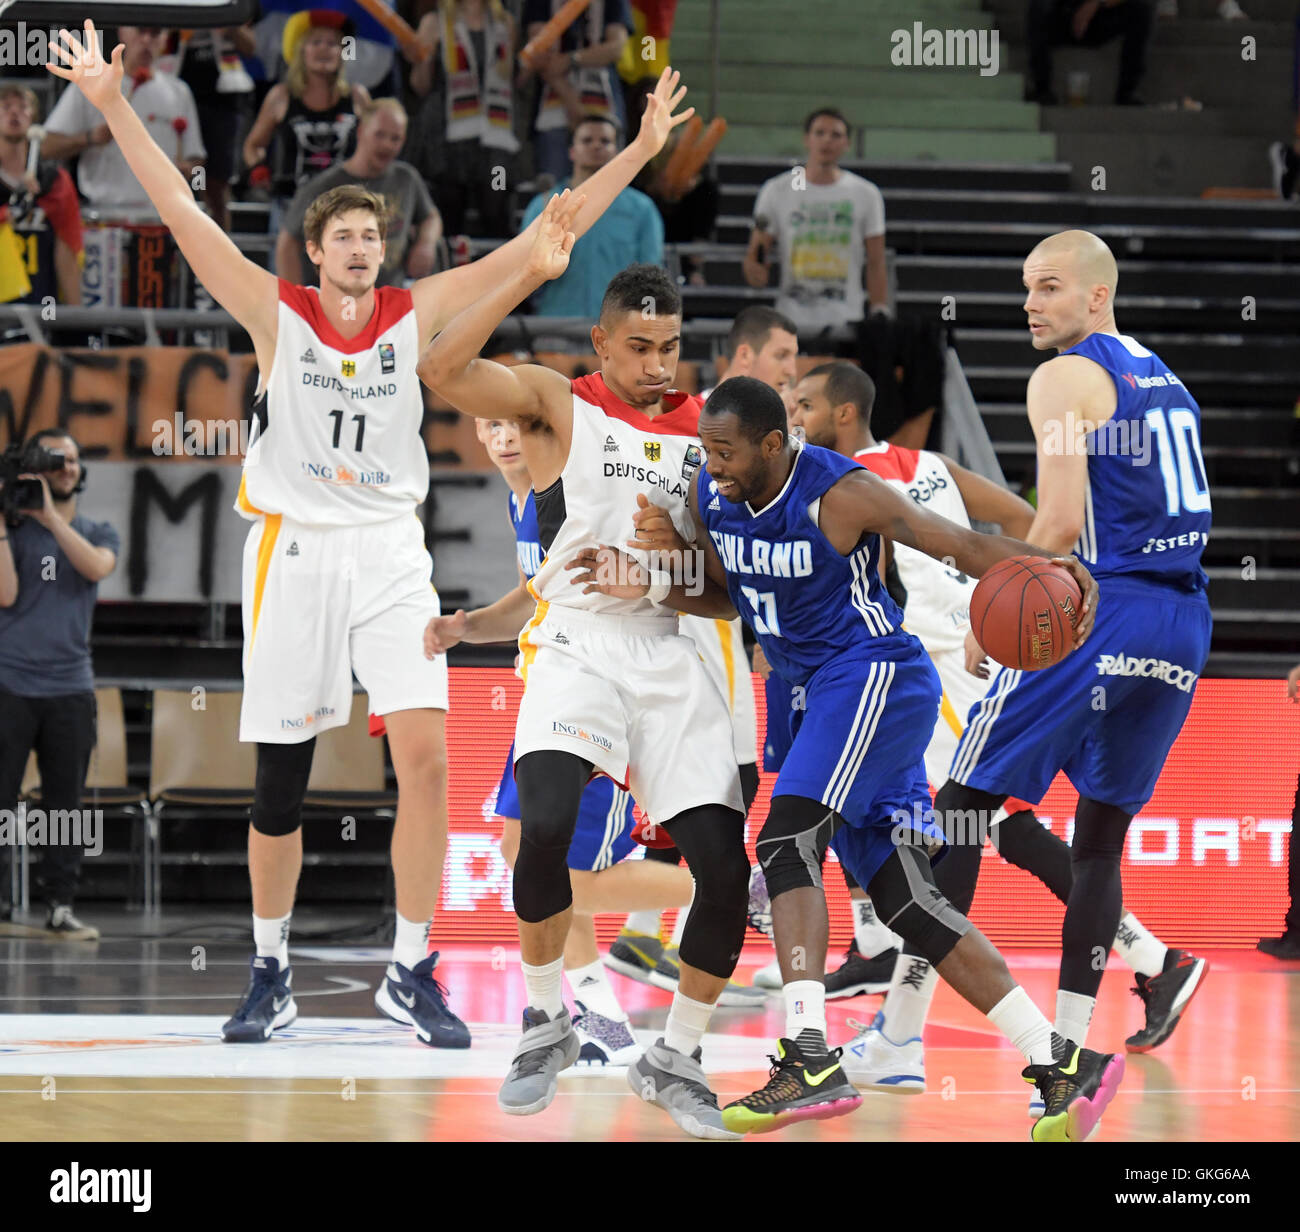 L'Allemagne Maodo Lo (c) et la Finlande Jamar Wilson en action lors de la Supercoupe de basket-ball match entre l'Allemagne et la Finlande à ratiopharm Arena de Neu-Ulm, Allemagne, 19 août 2016. PHOTO : STEFAN UDRY/dpa Banque D'Images